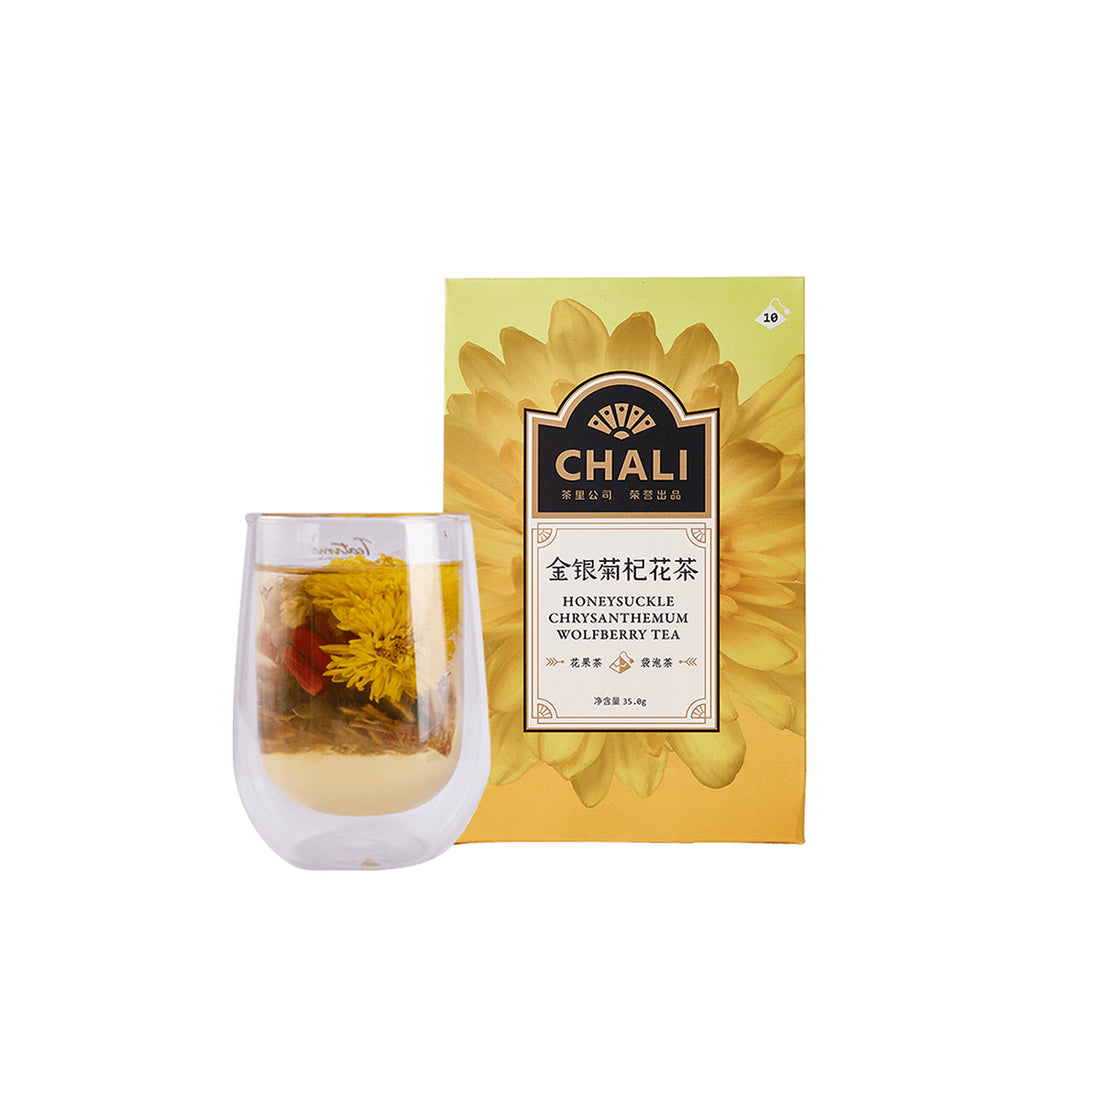 Honeysuckle Chrysanthemum Wolfberry Tea